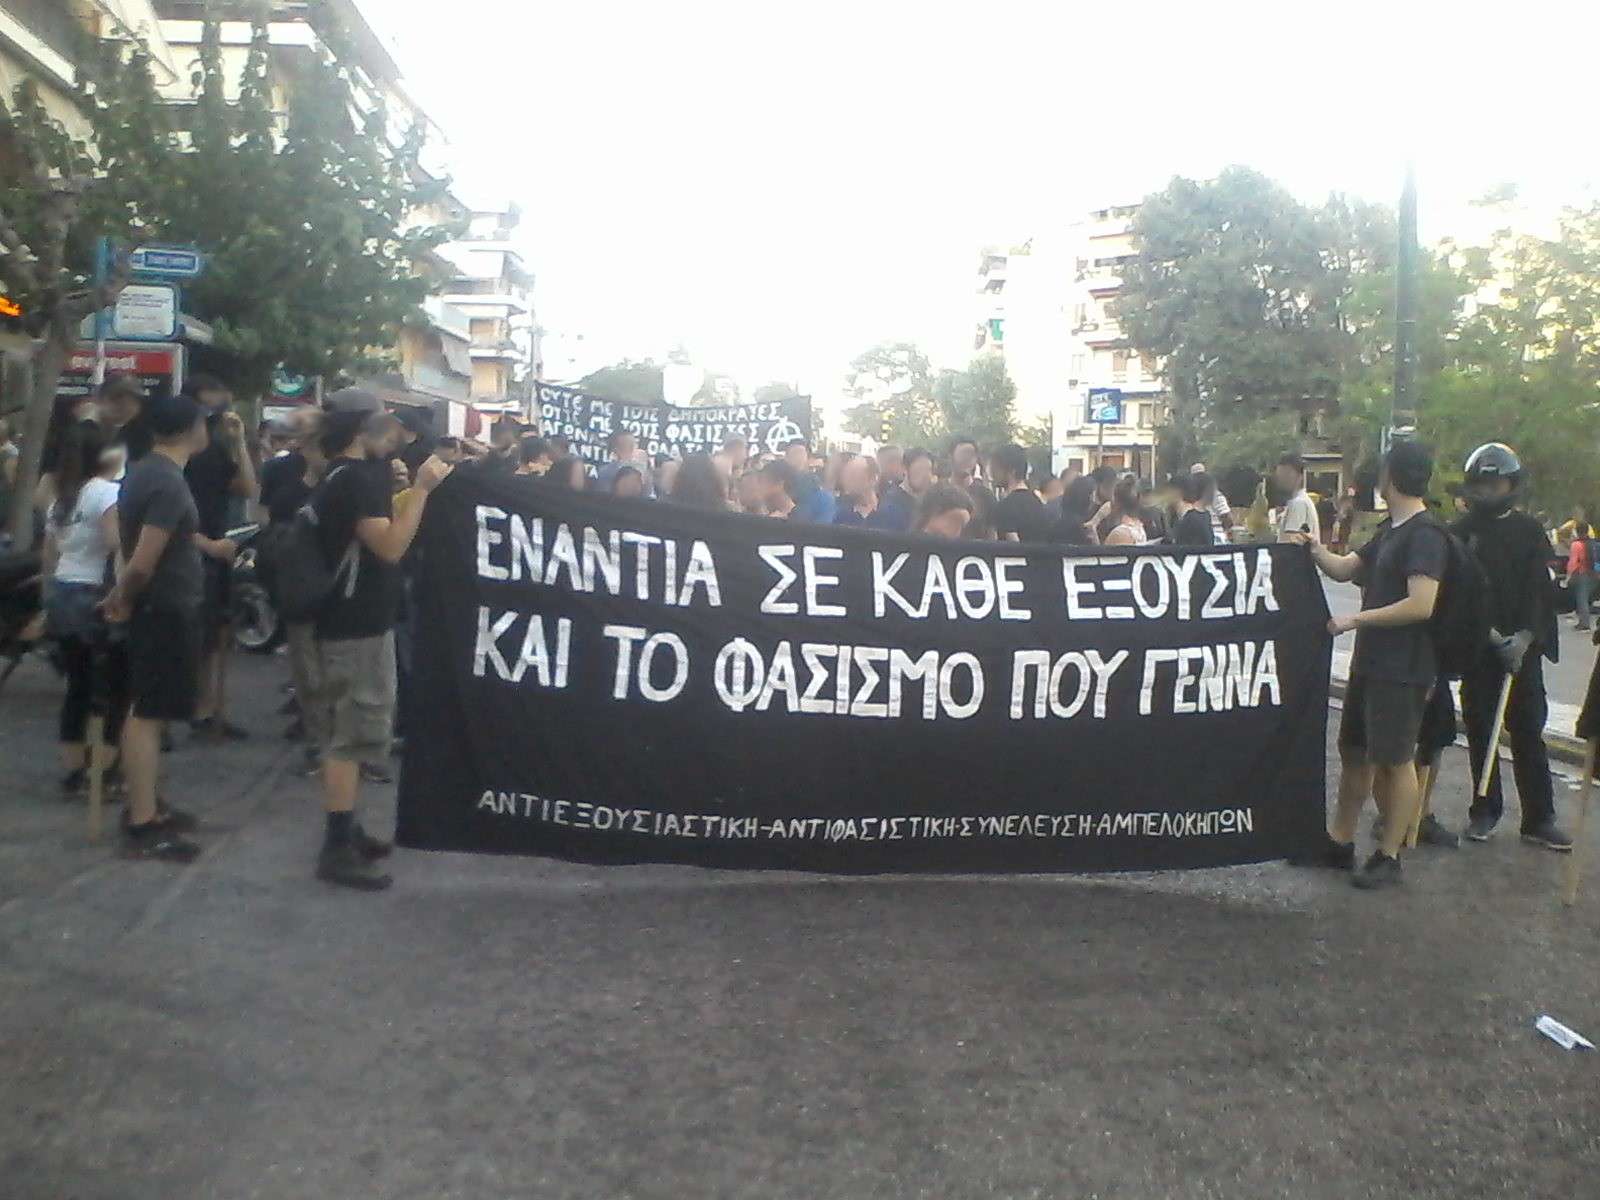 Αθήνα: Φωτογραφίες από την αντιφασιστική πορεία στους Αμπελόκηπους [09/07]